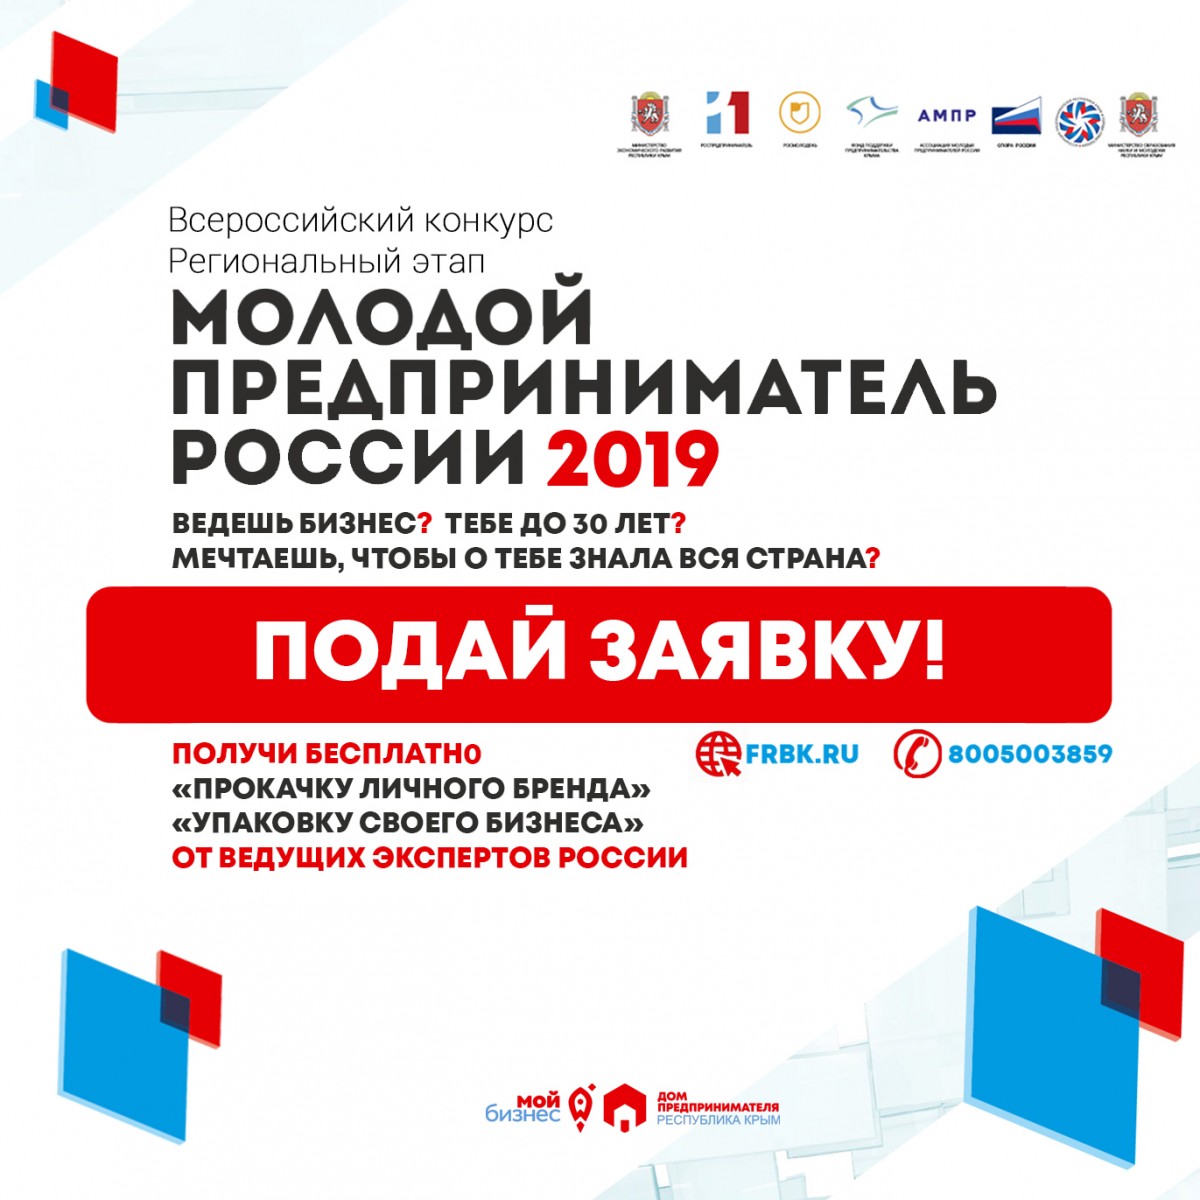 Всероссийский конкурс Молодой Предприниматель России